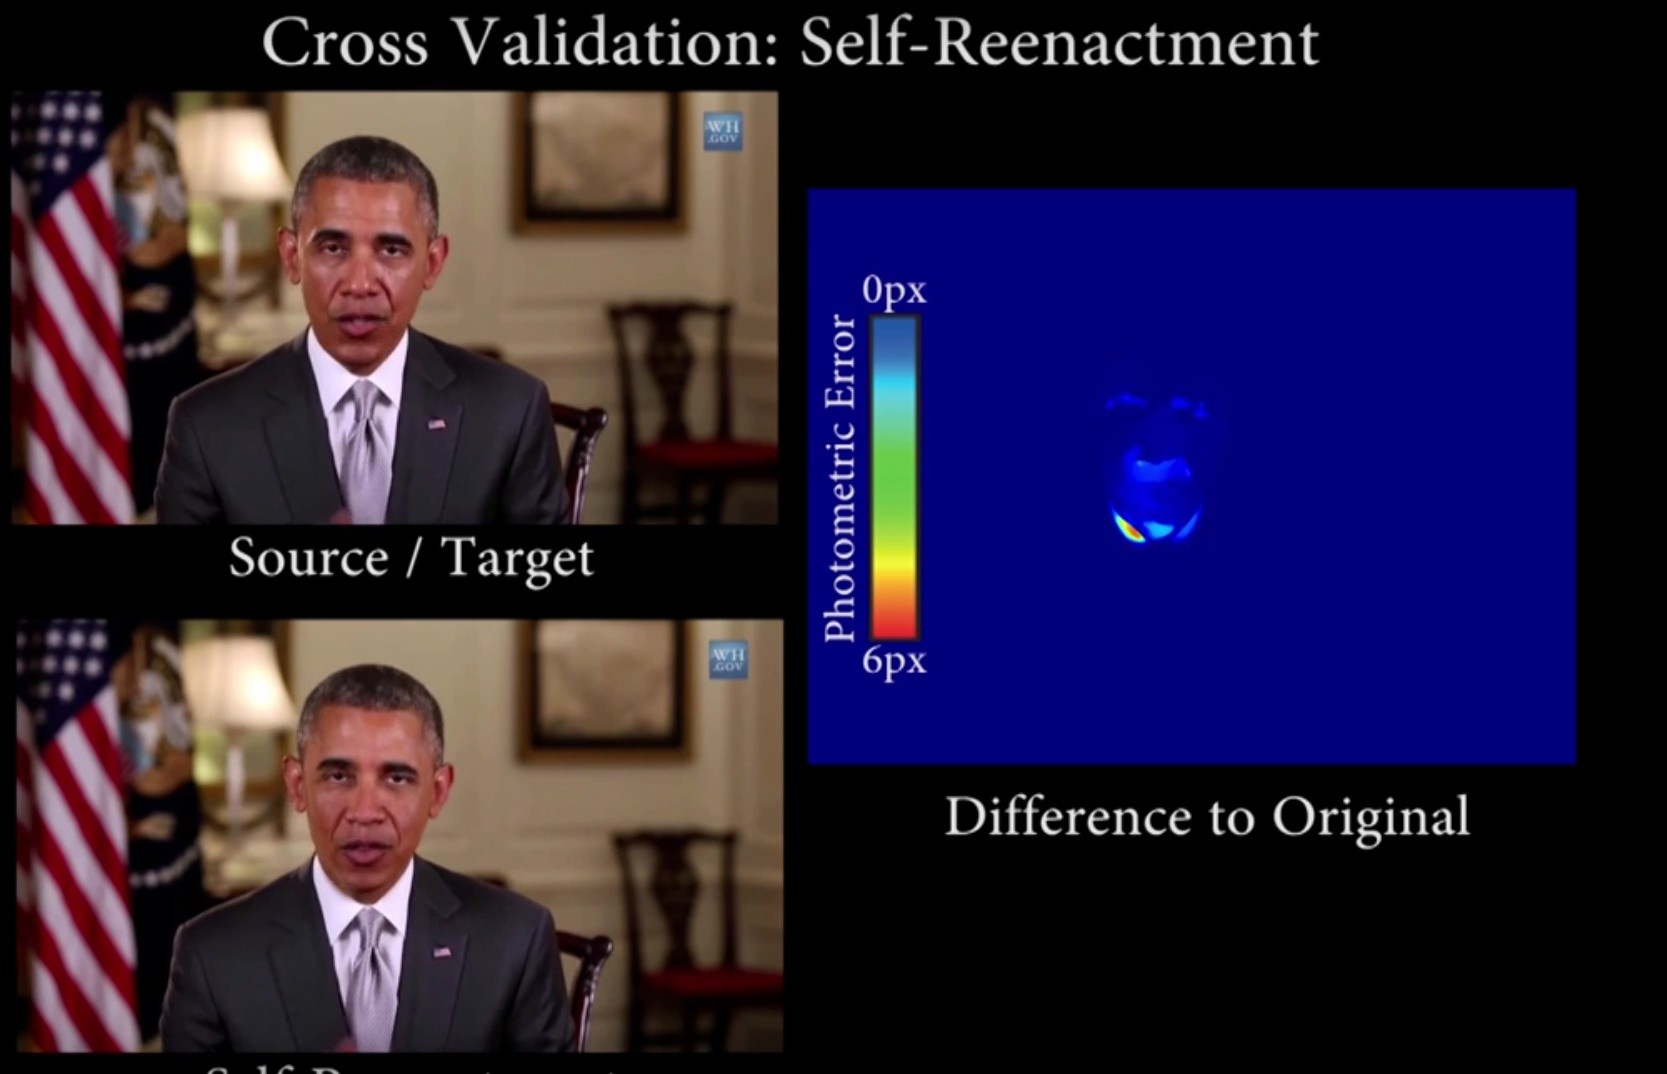 Un nouveau programme permet de modifier en temps réel l’expression faciale d’une personne sur vidéo